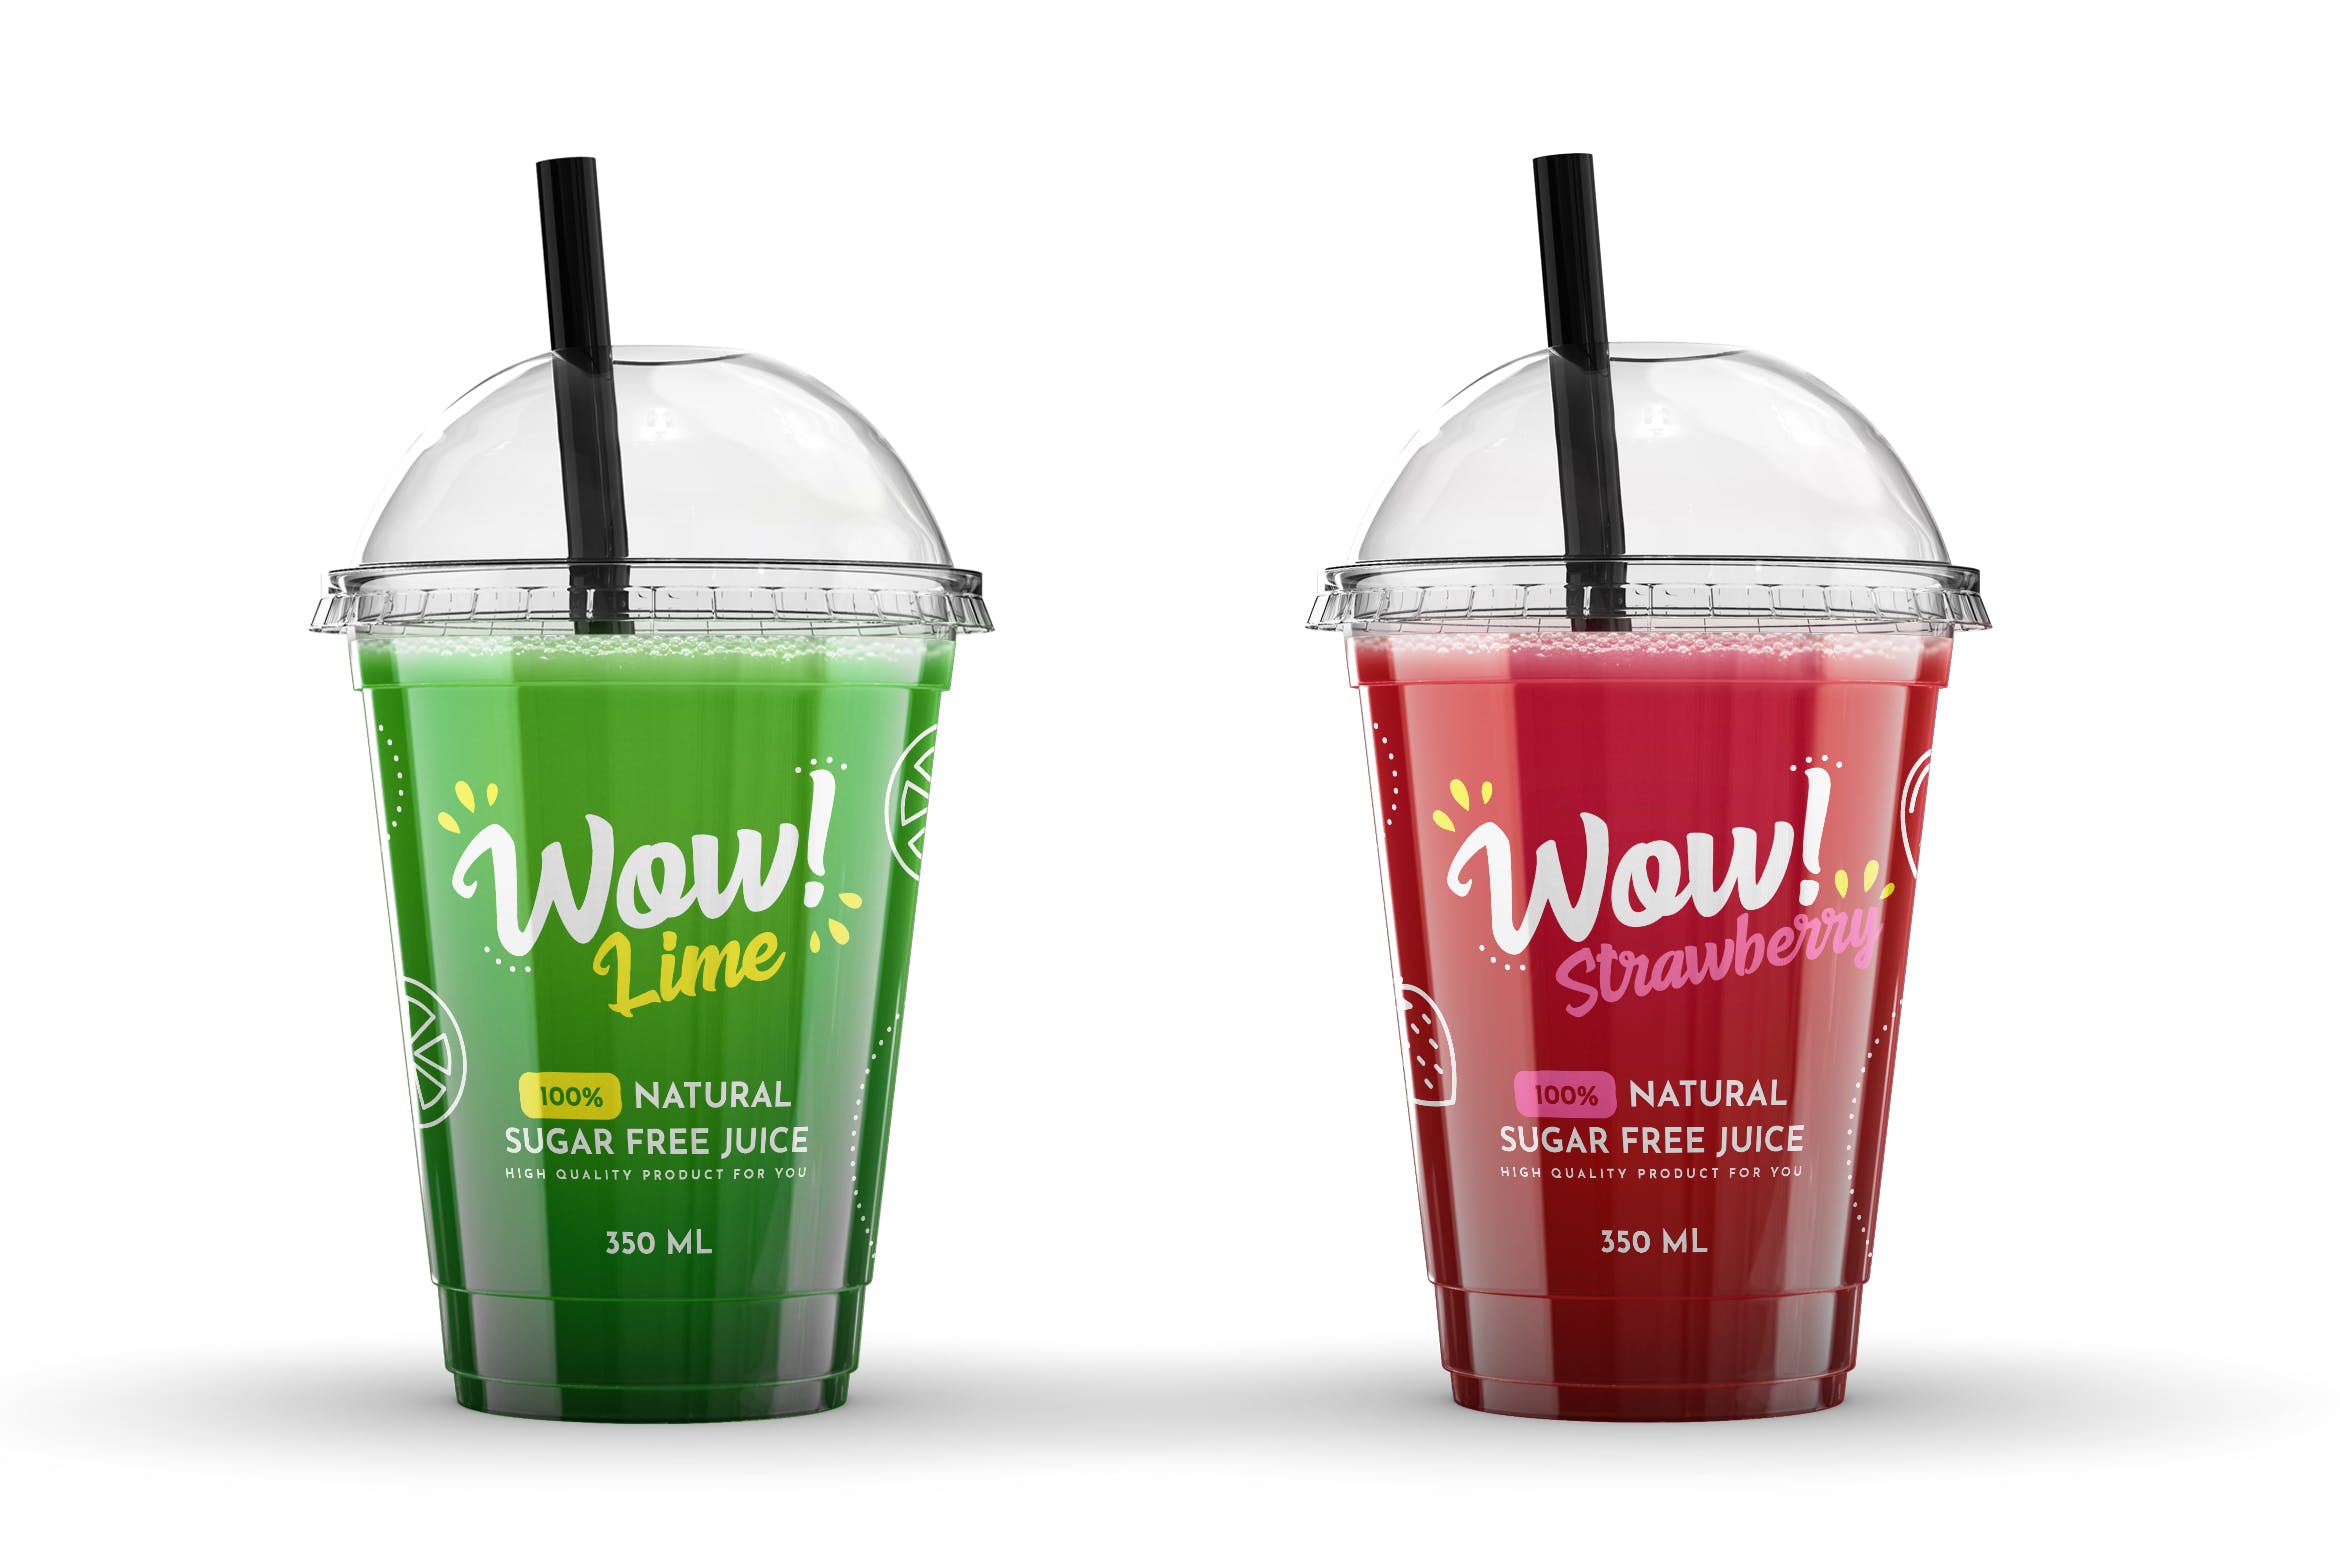 塑料果汁杯外观设计样机模板 Plastic Juice Cup Mock-Up插图